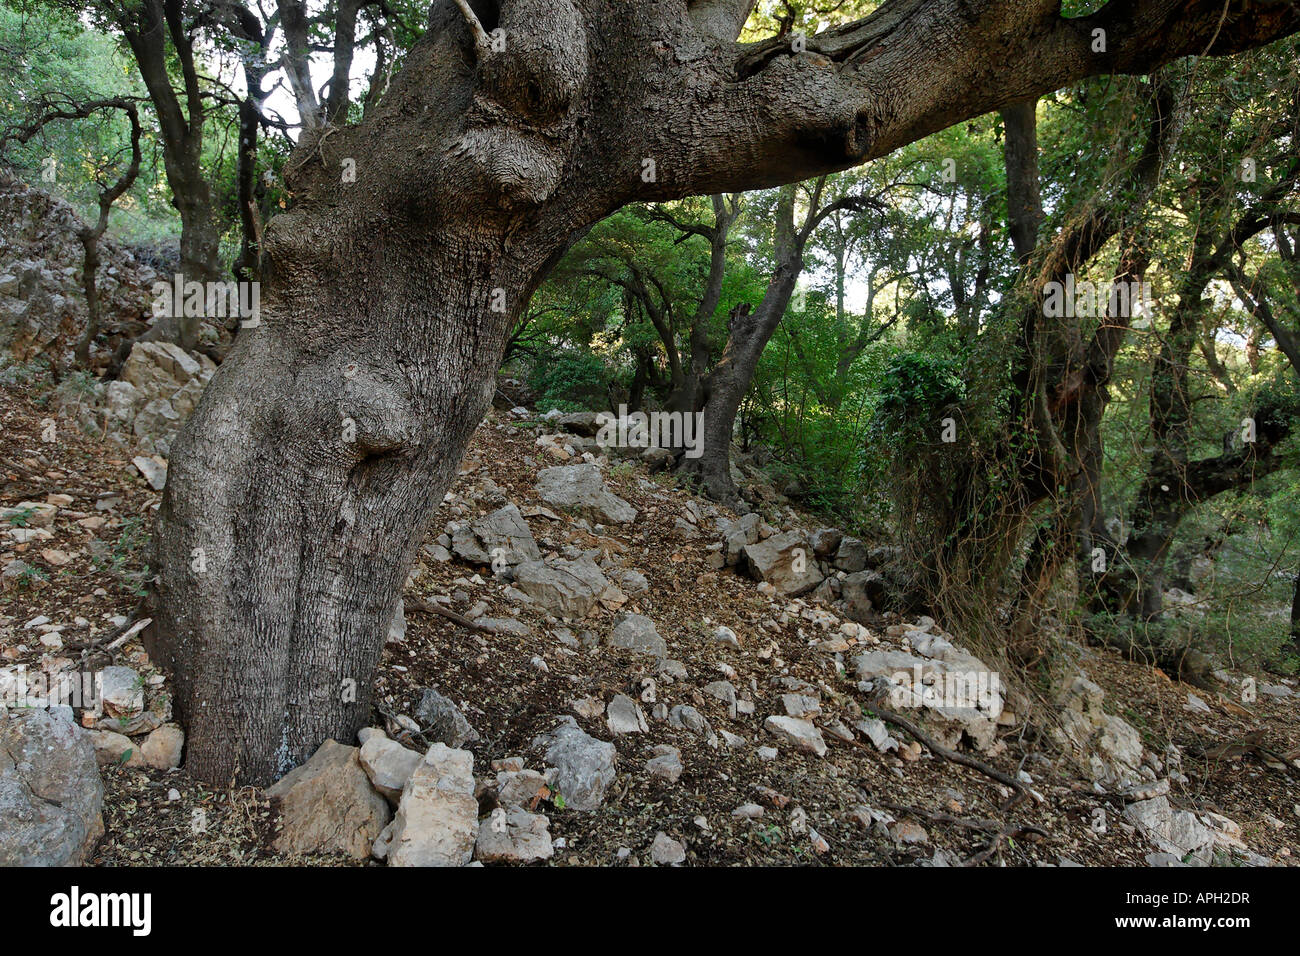 Les hauteurs du Golan chêne kermès Quercus calliprinos sur le mont Betarim l'emplacement de l'alliance entre les morceaux Banque D'Images